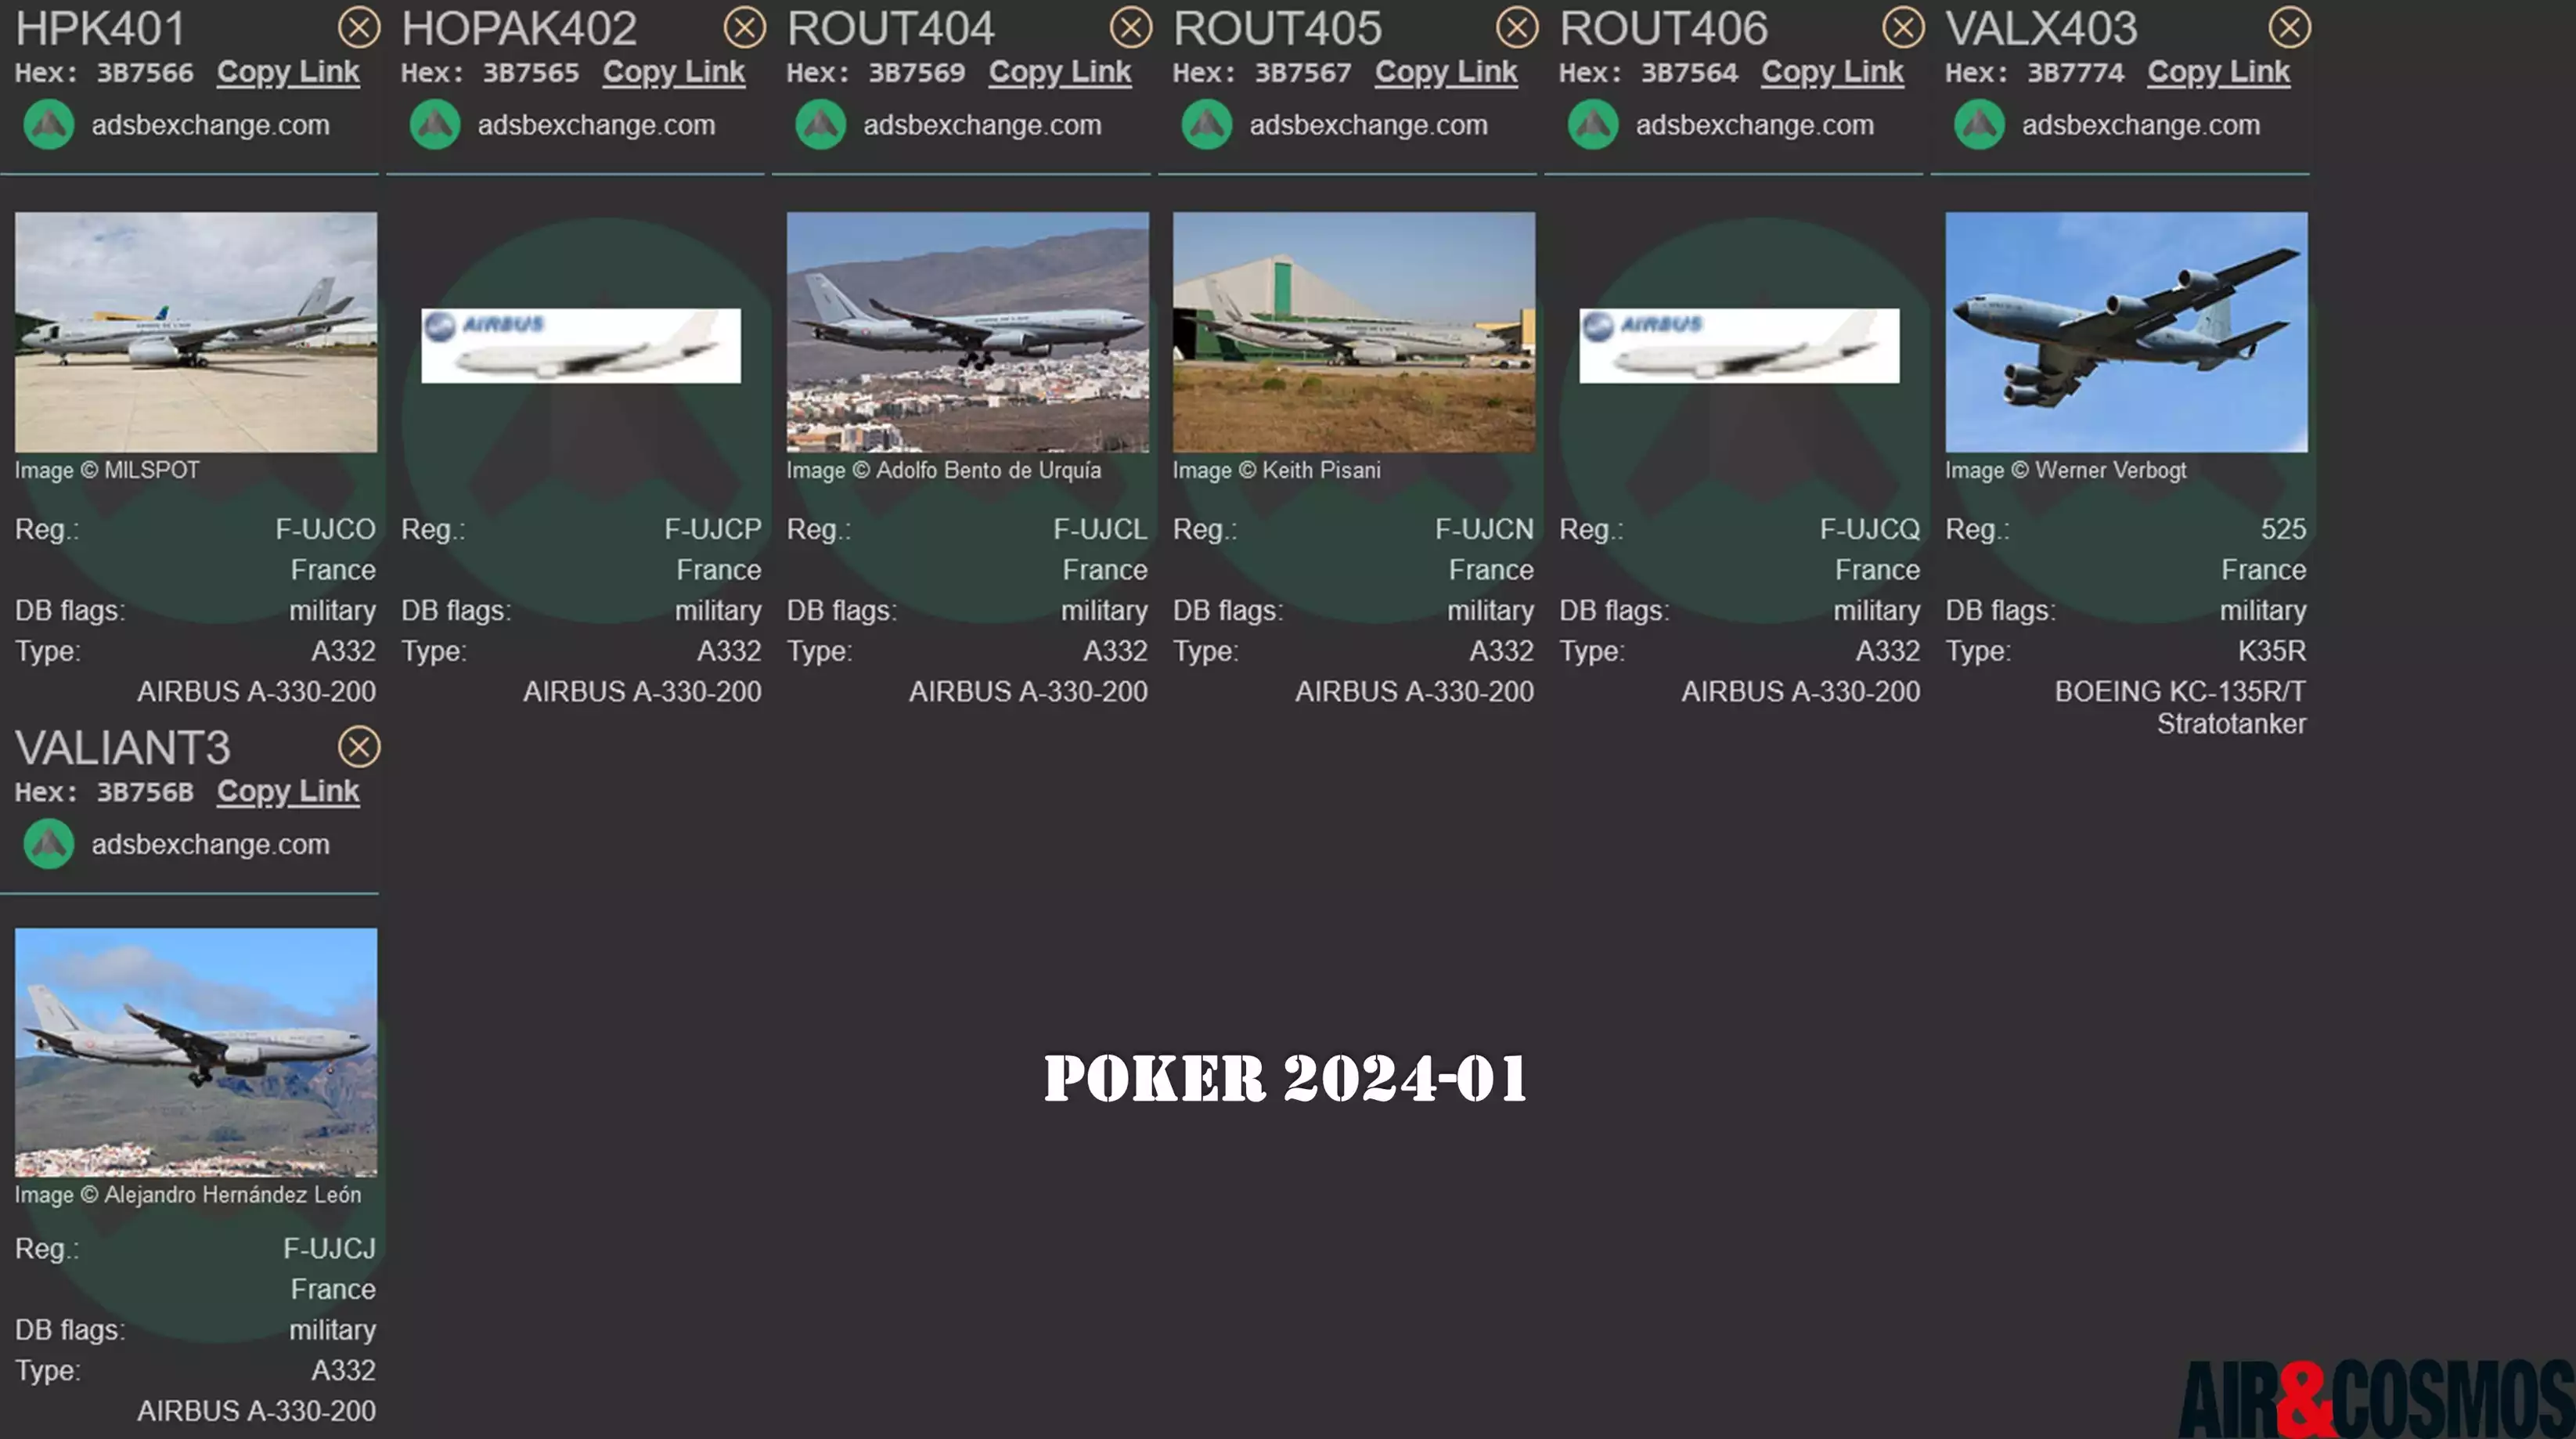 Liste des avions visibles sur les sites de live tracking lors de l'exercice Poker 2024-01.